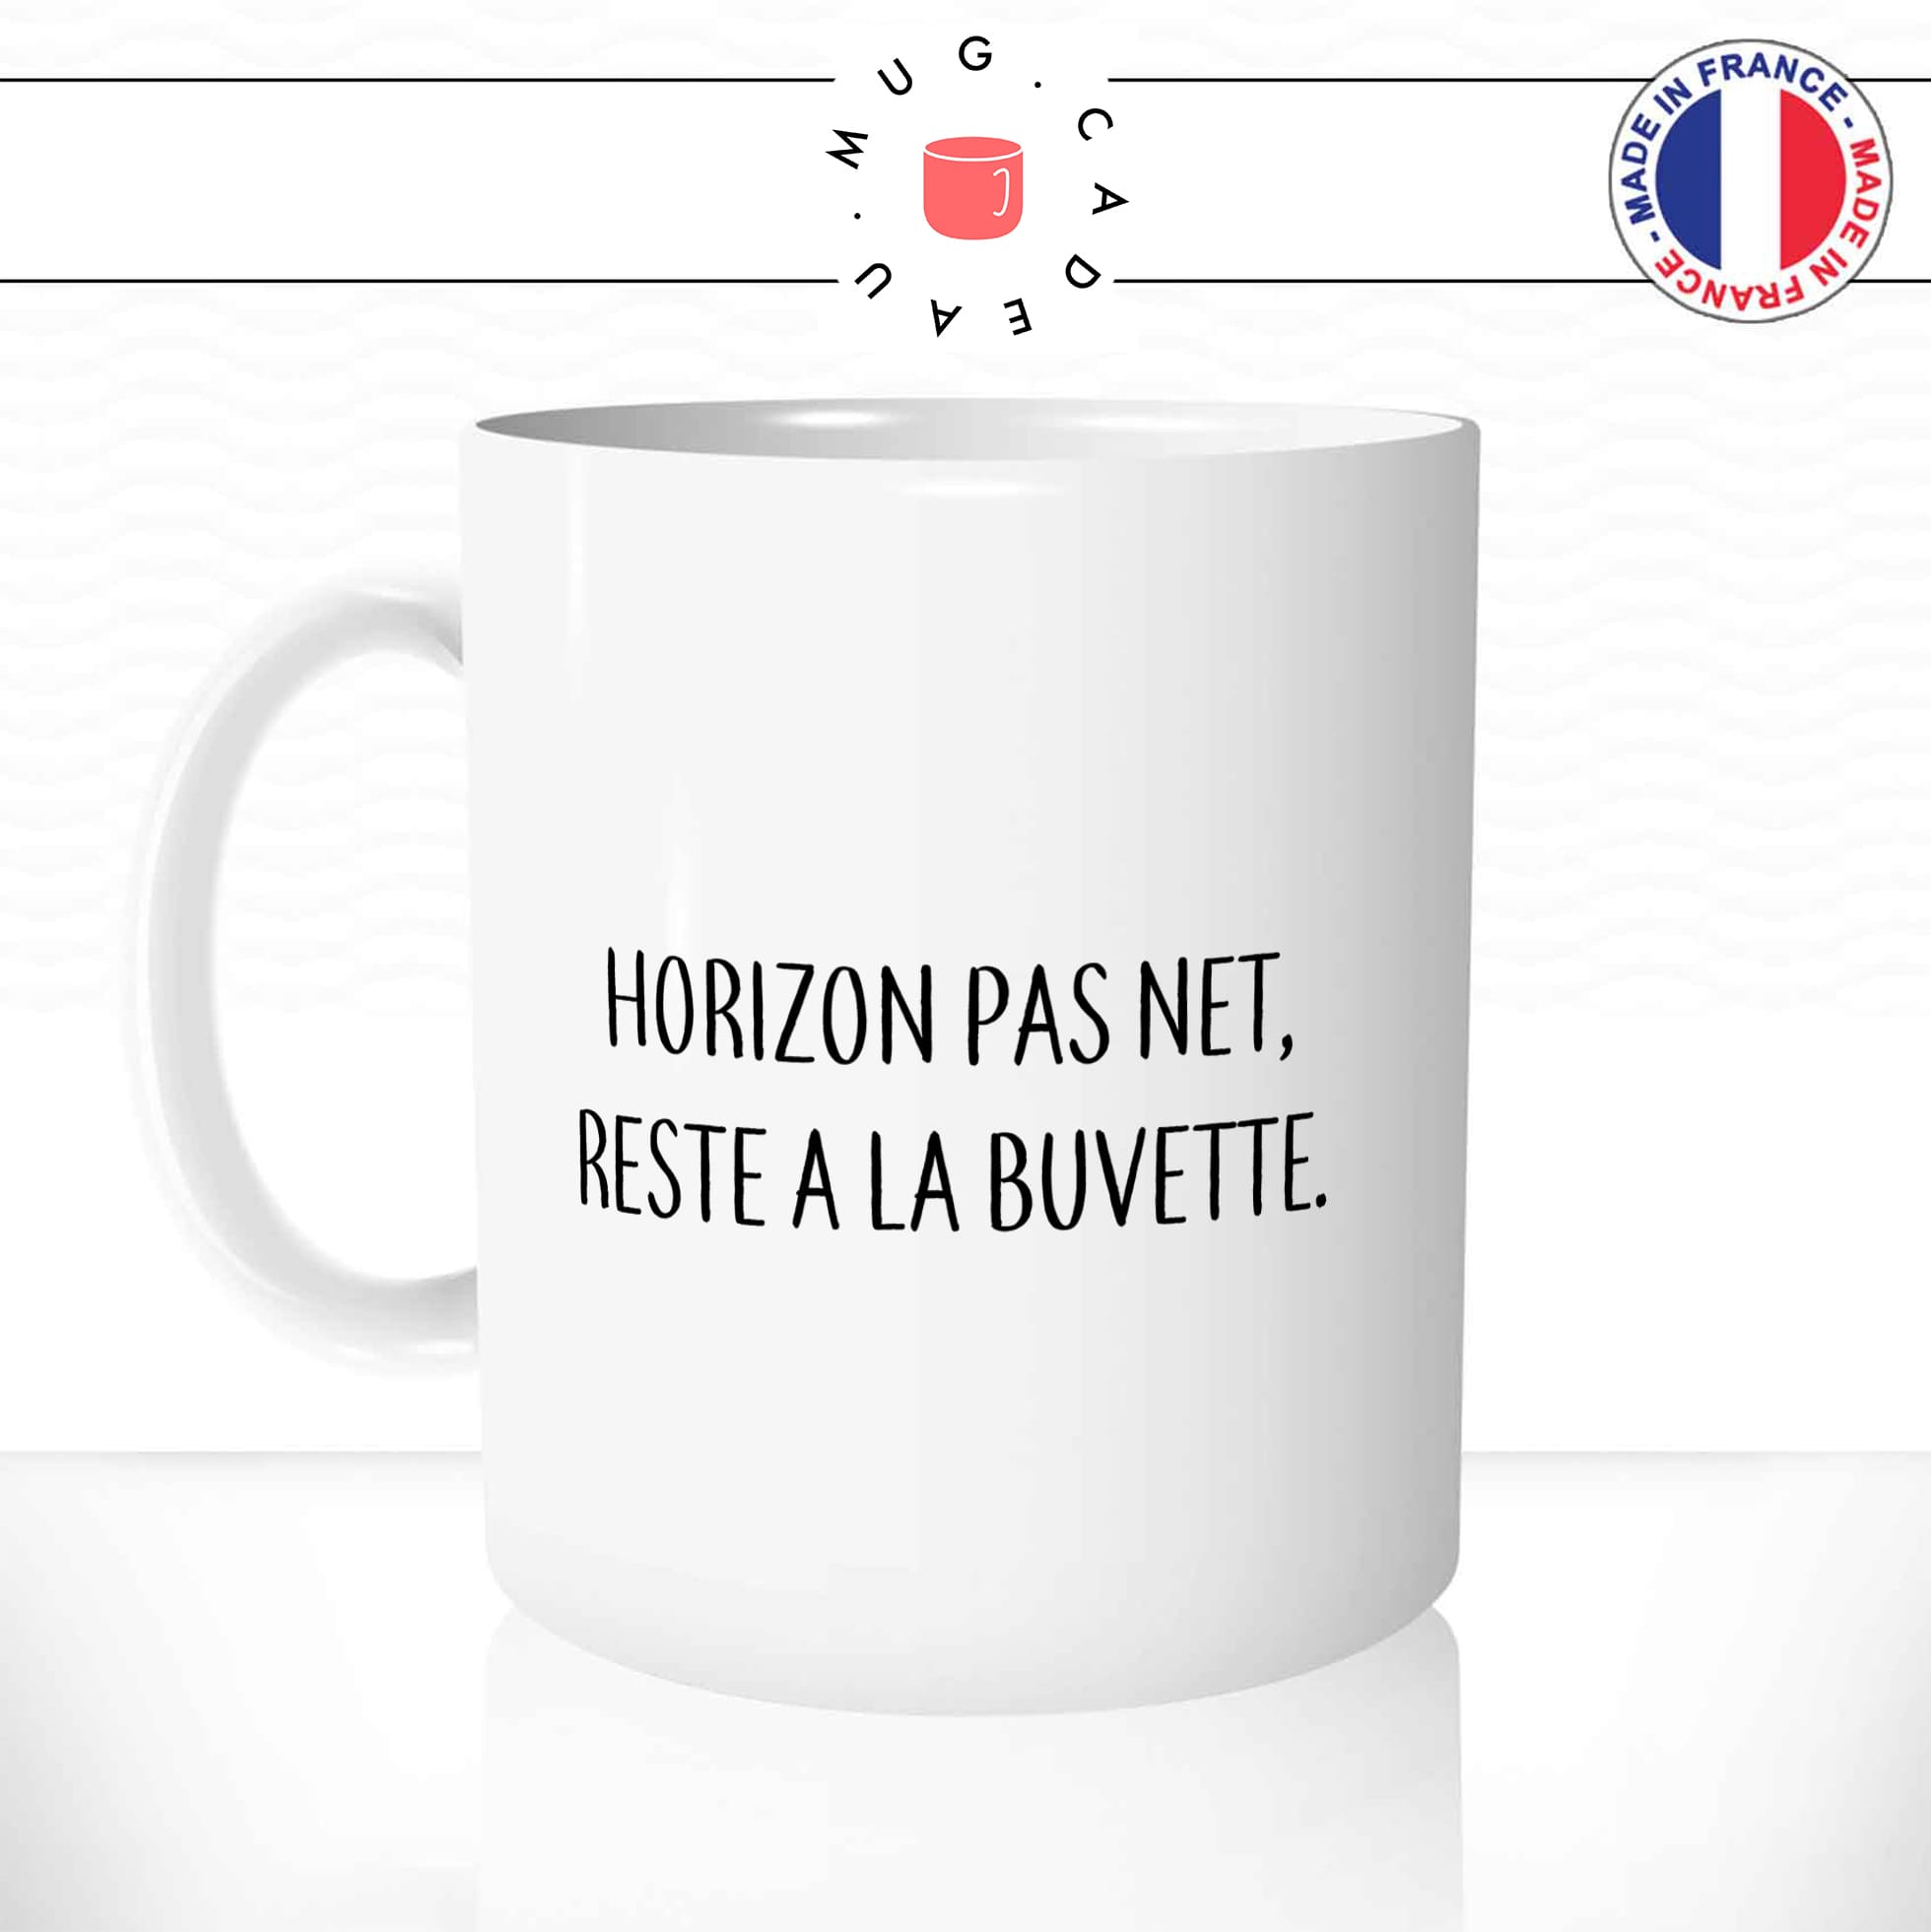 mug-tasse-horizon-pas-net-reste-a-la-buvette-apéro-dicton-breton-normand-biere-humour-fun-café-thé-idée-cadeau-originale-personnalisée